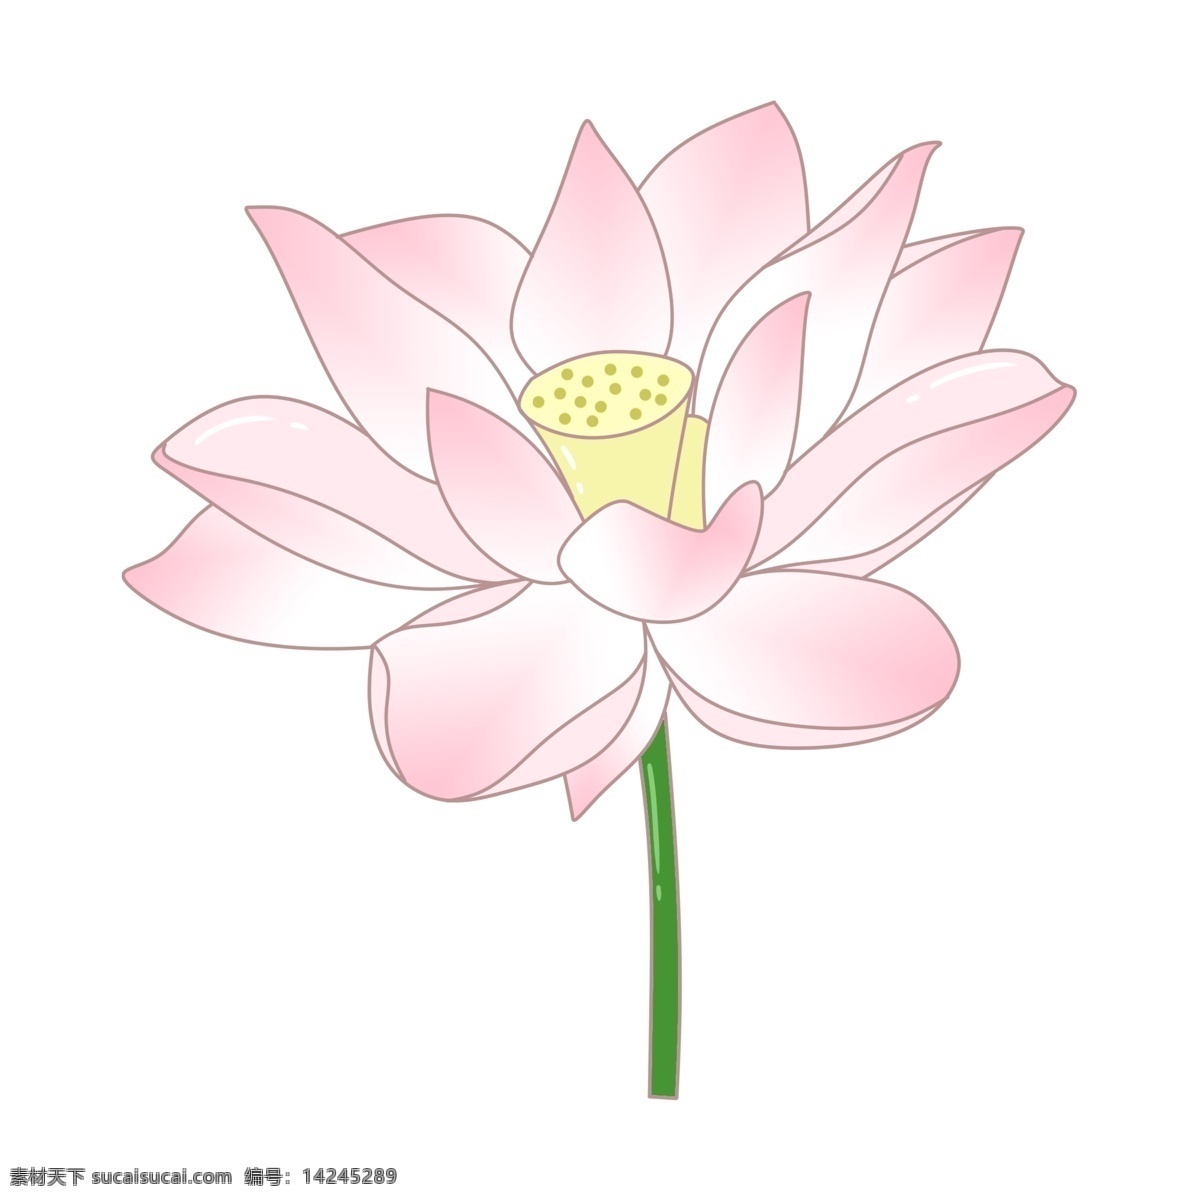 粉色 美丽 荷花 插画 粉色的荷花 卡通插画 荷花插画 莲花插画 鲜花插画 花朵插画 美丽的荷花